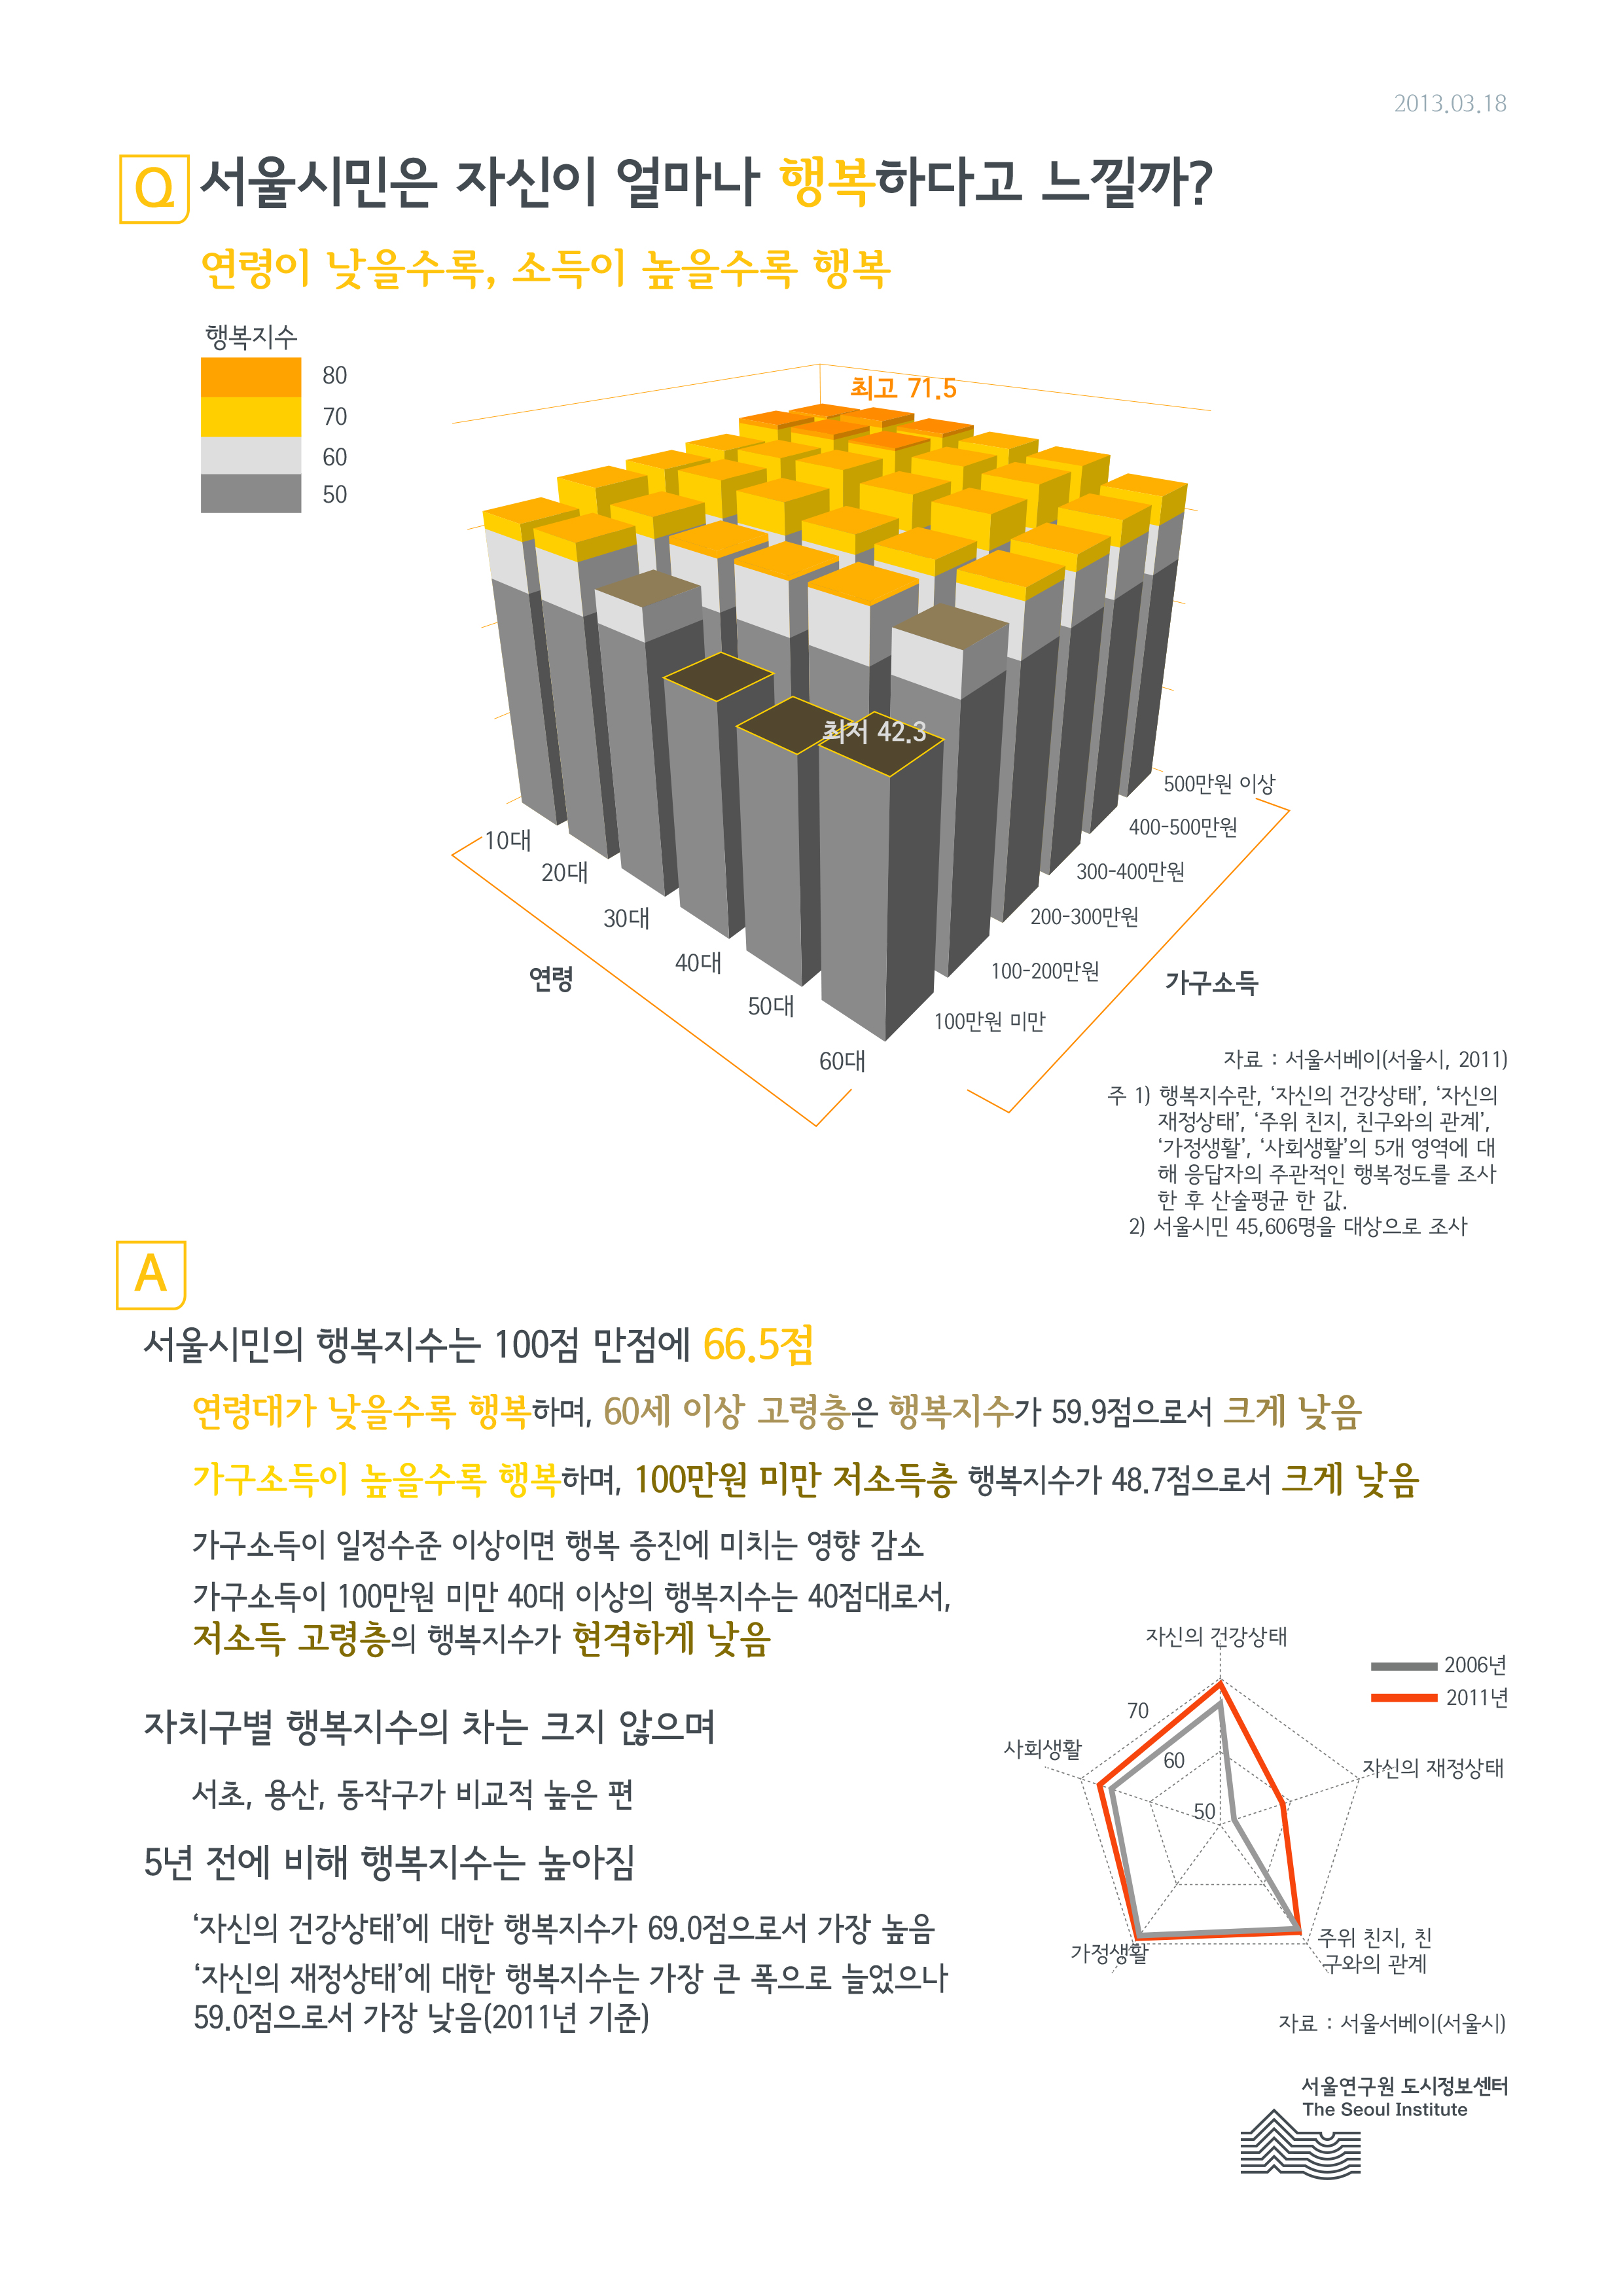 서울시민은 자신이 얼마나 행복하다고 느낄까? 서울인포그래픽스 제25호 2013년 3월 18일 연령이 낮을수록, 소득이 높을수록 행복지수가 높음으로 정리될 수 있습니다. 인포그래픽으로 제공되는 그래픽은 하단에 표로 자세히 제공됩니다.